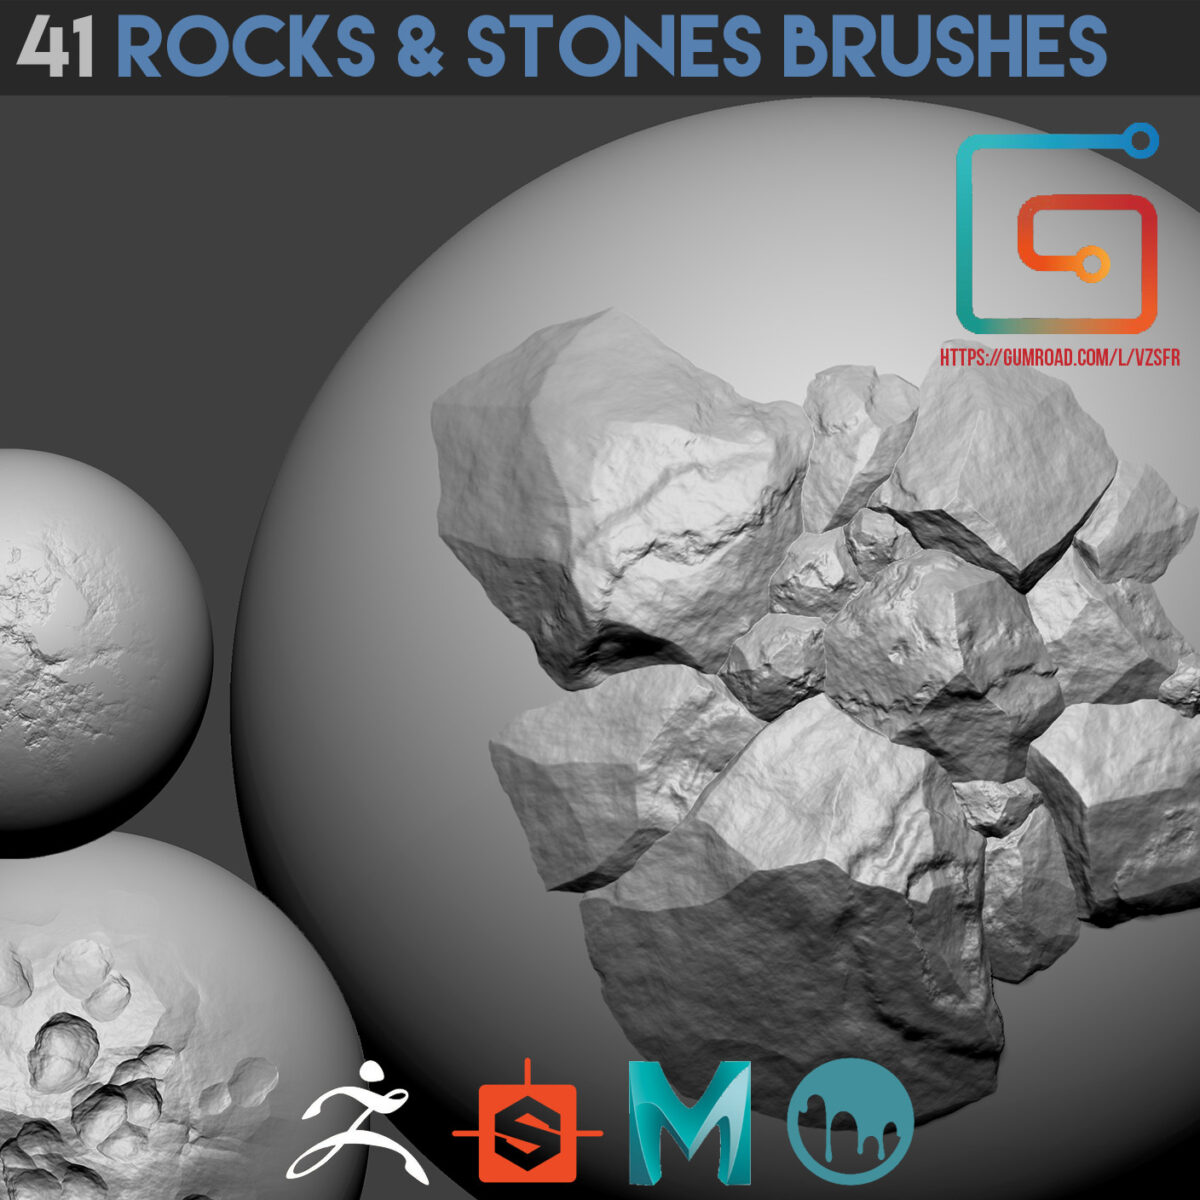 41 Rocks & stones brushes stones brushes stones brushes